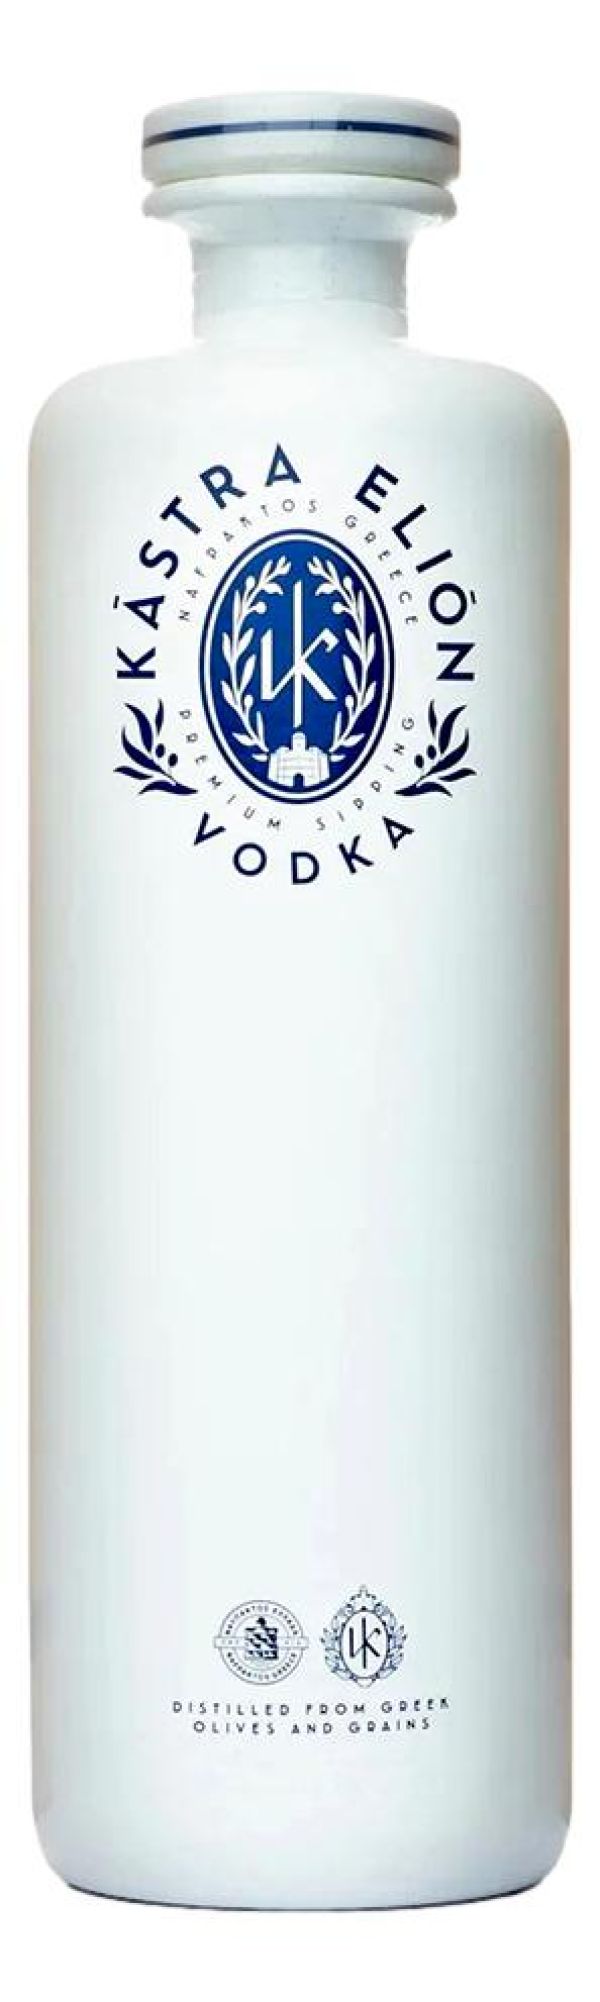 Kastra Elion Vodka